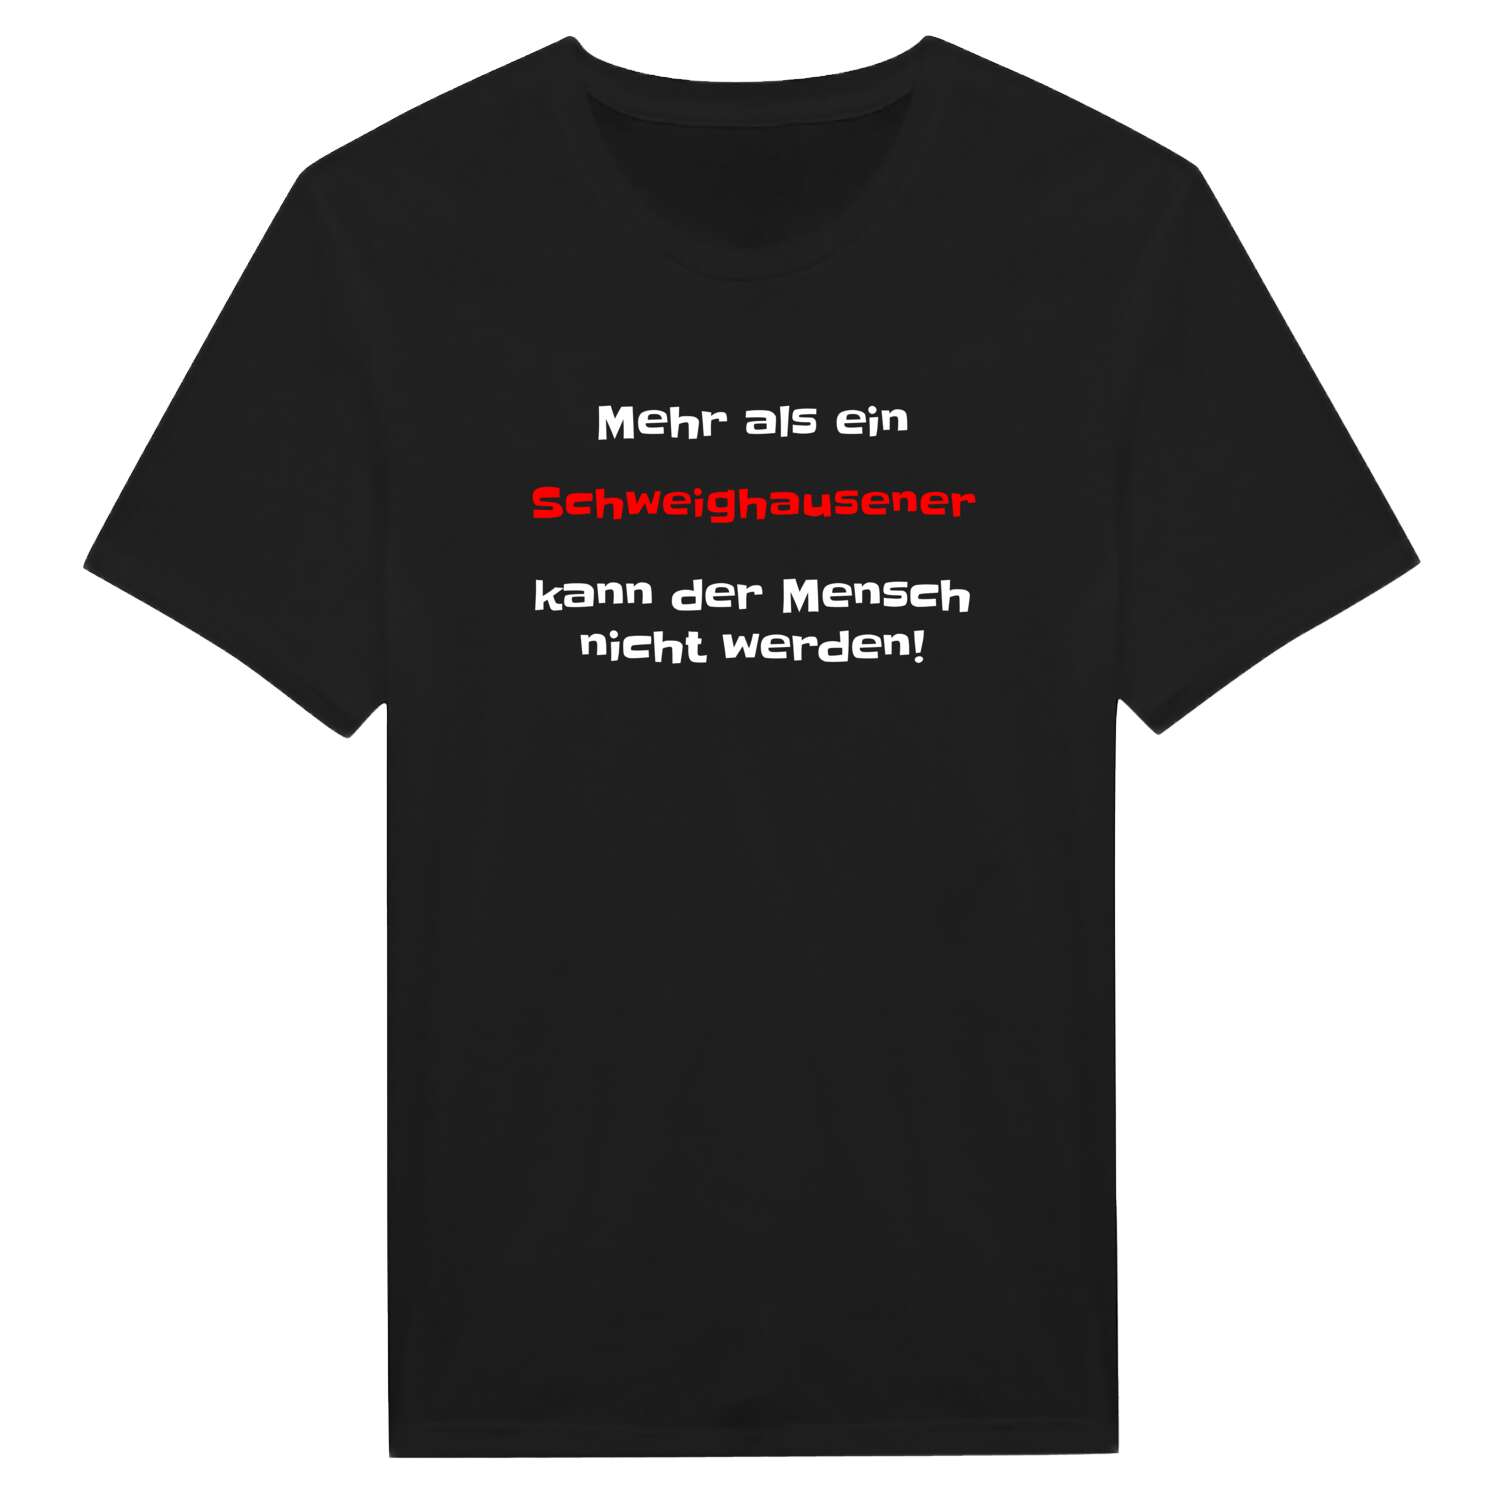 Schweighausen T-Shirt »Mehr als ein«